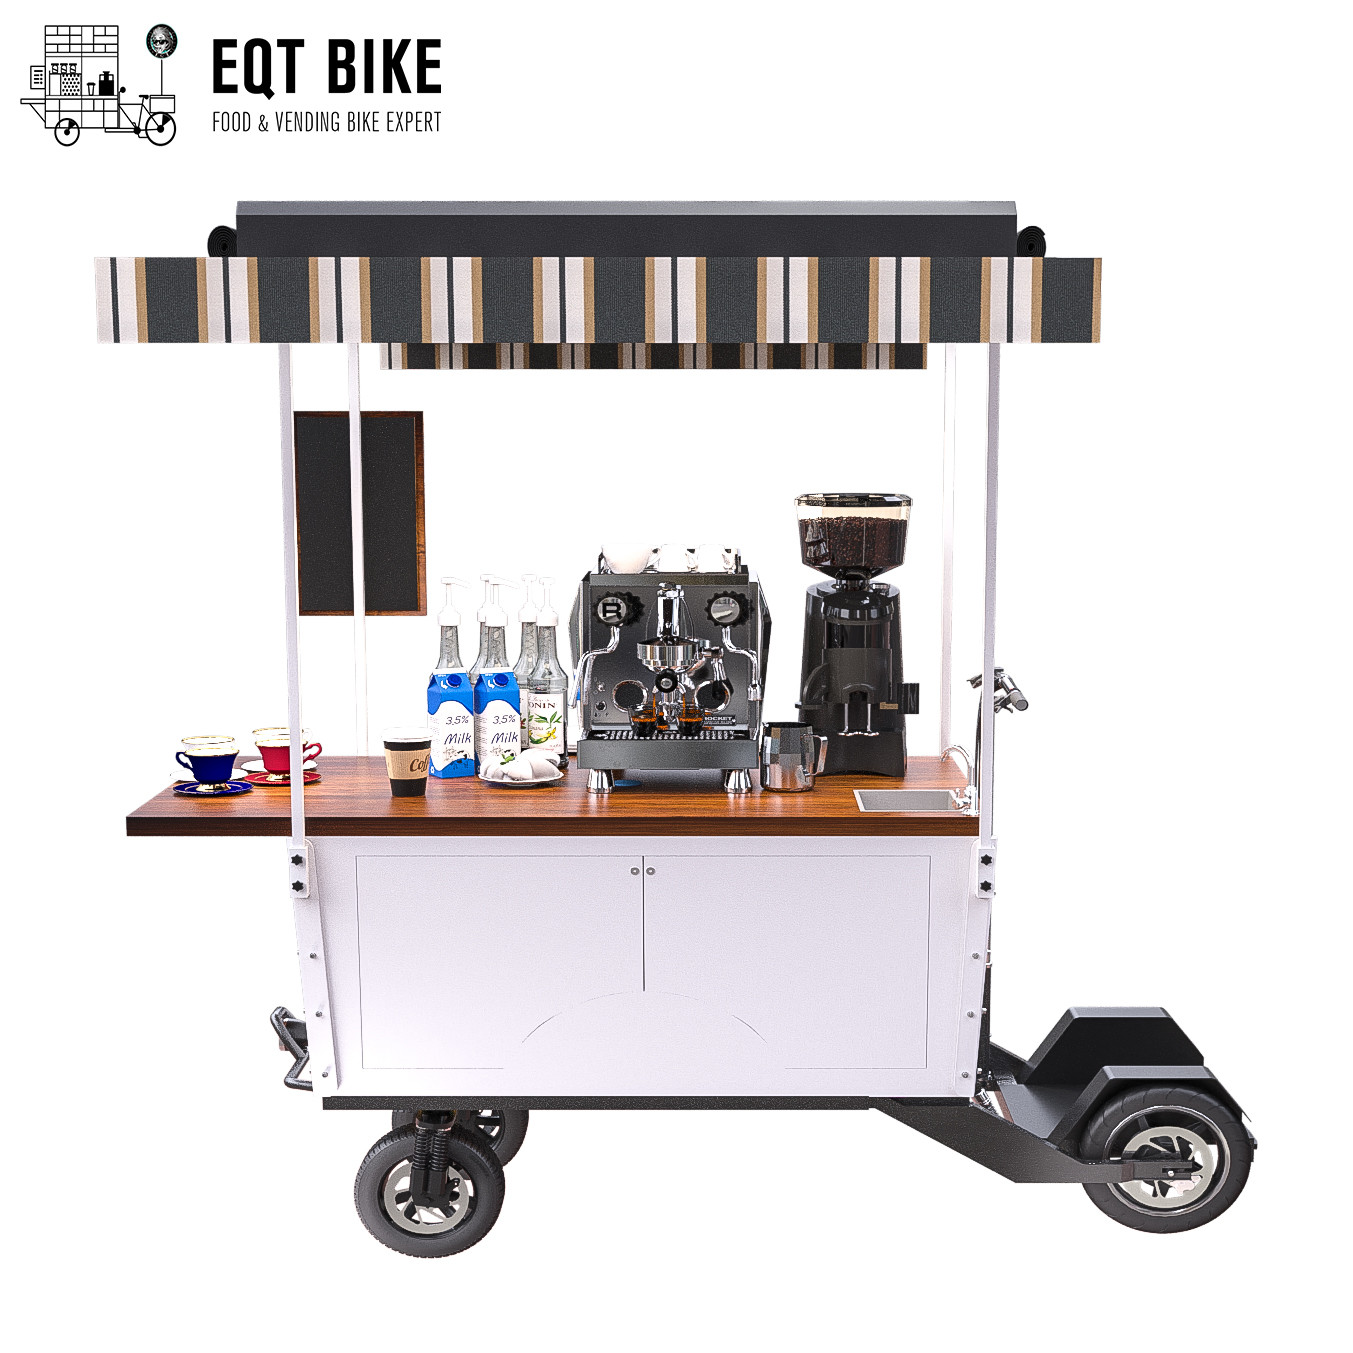 Carro eléctrico de cuatro ruedas IPX4 18KM/H de la bici del café de la vespa